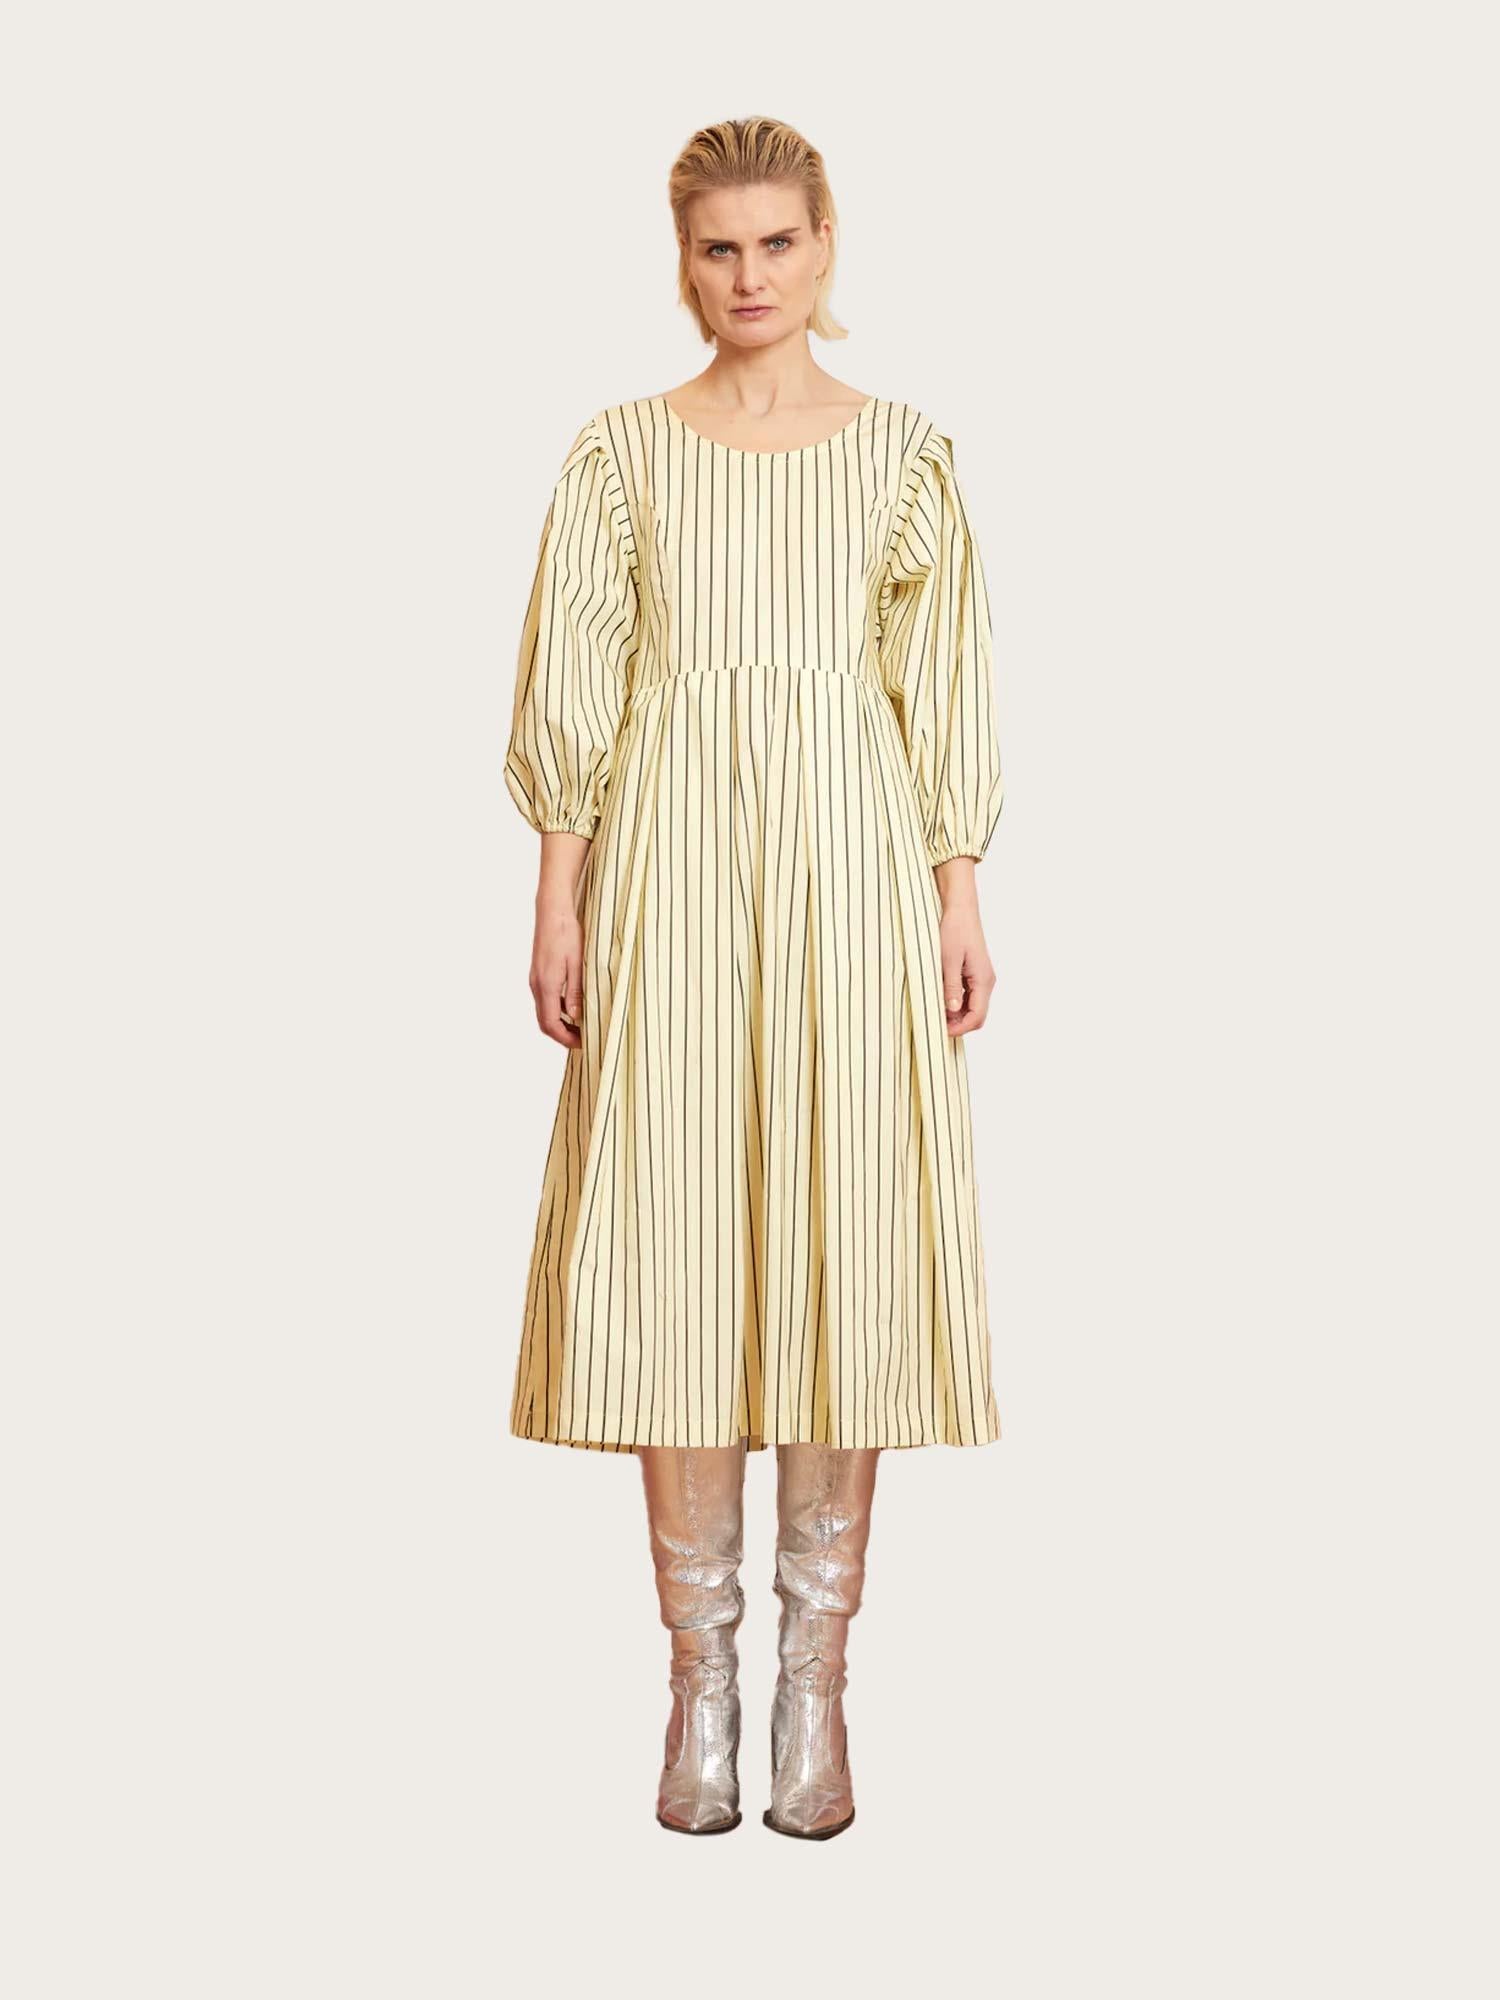 Gladlaks Dress - Yellow Stripes